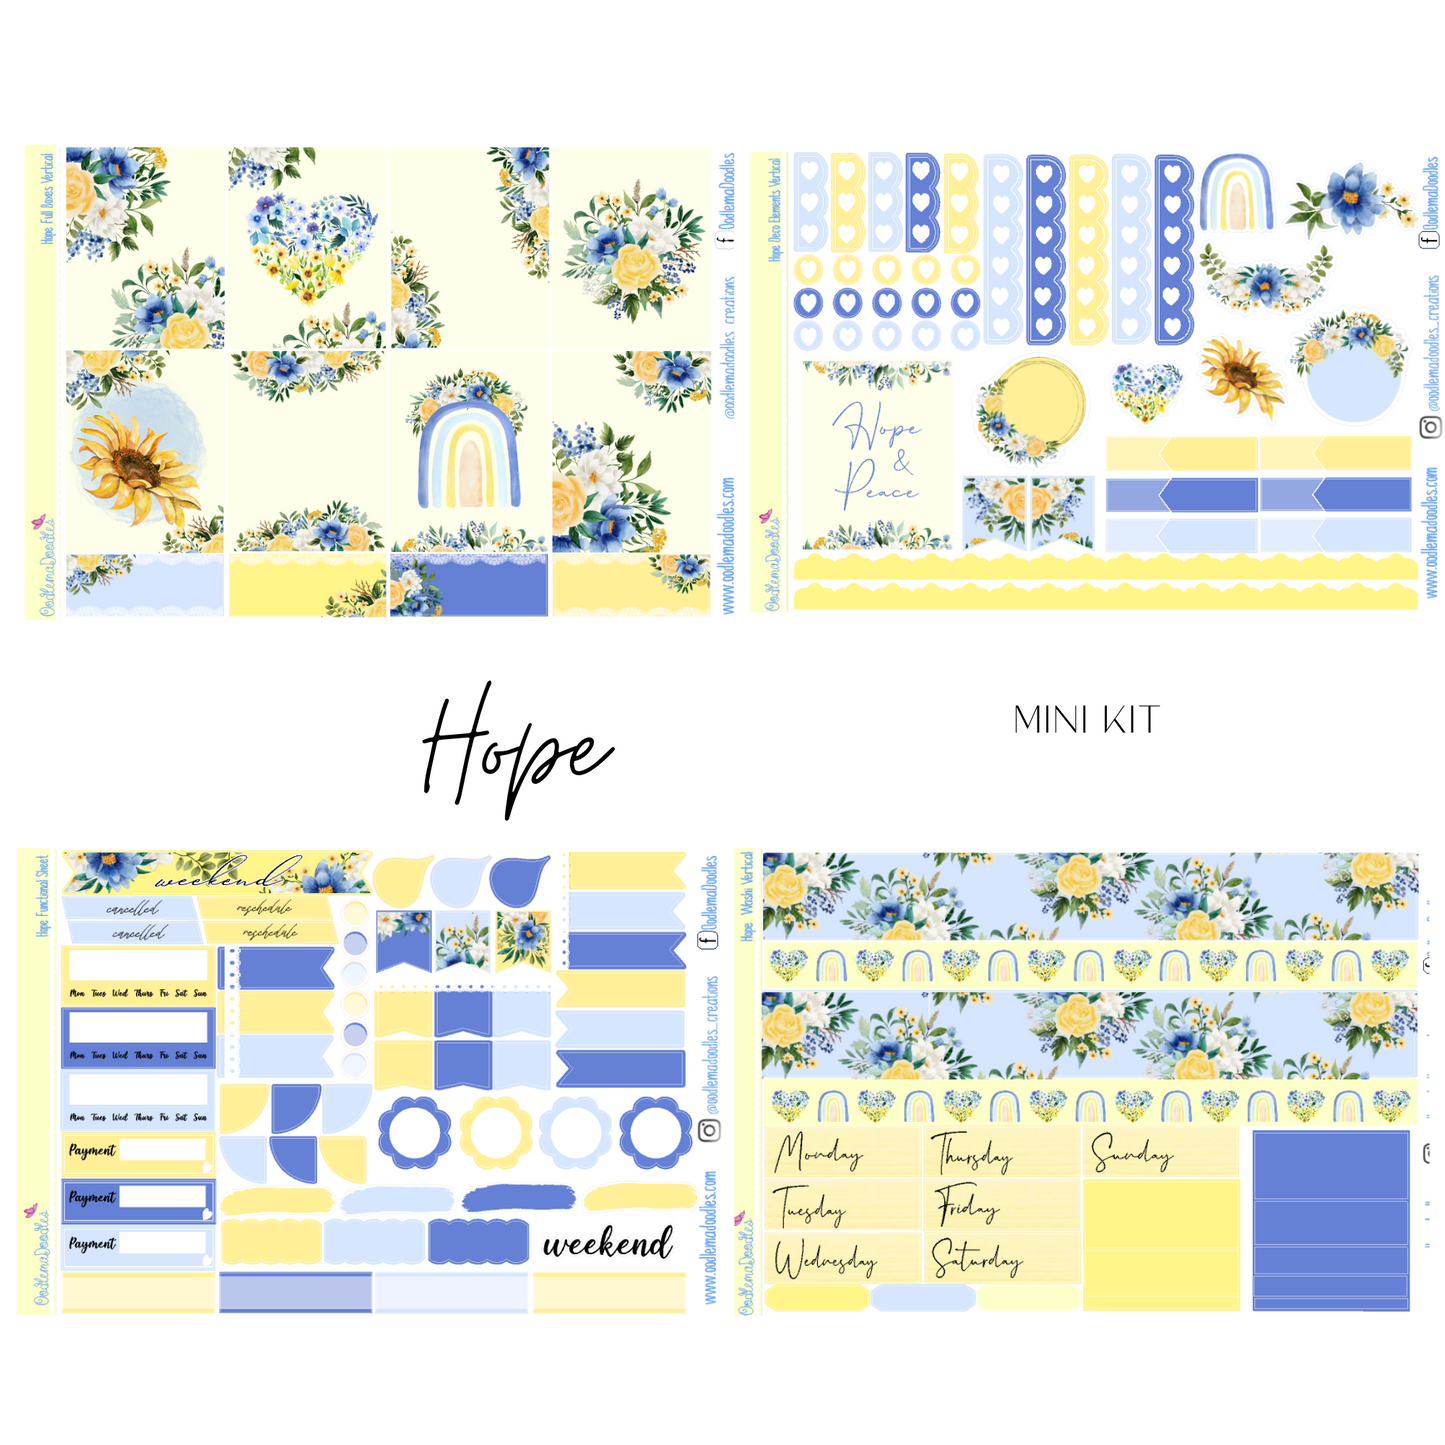 Hope Mini Kit